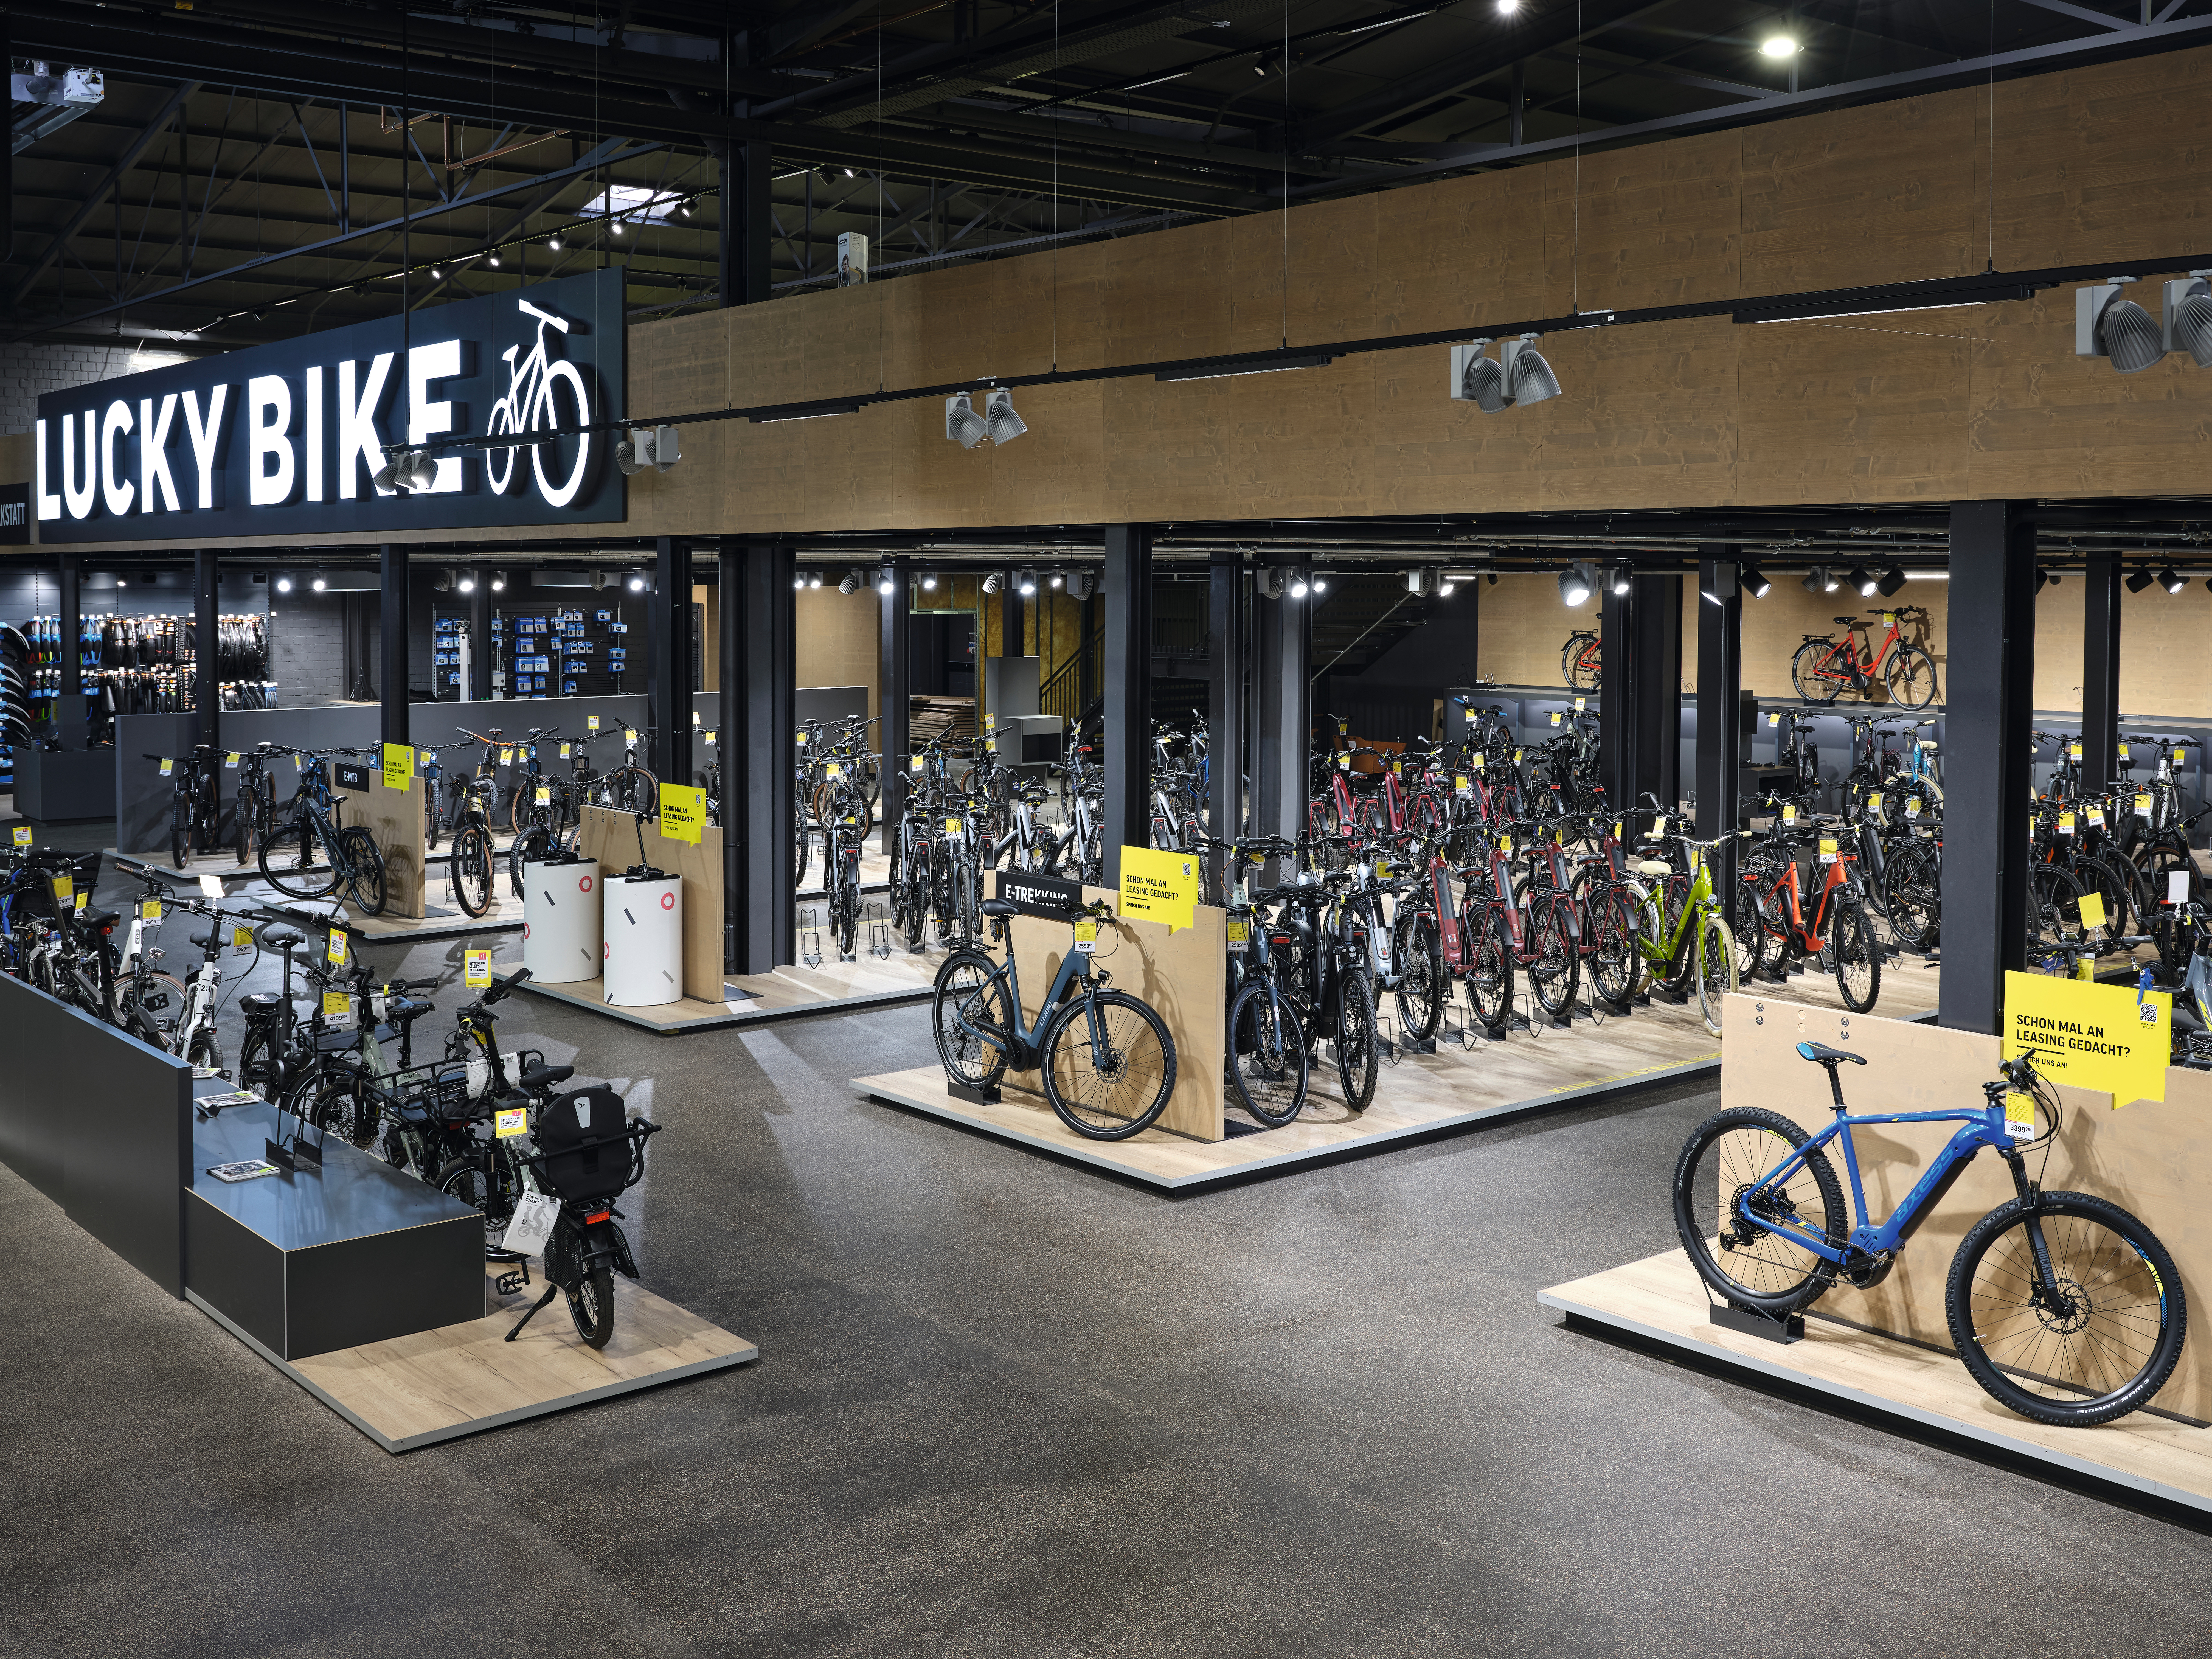 El piso Design Flooring GreenTec Roble Monfort natural sirve como pedestal para las bicicletas en la tienda. 